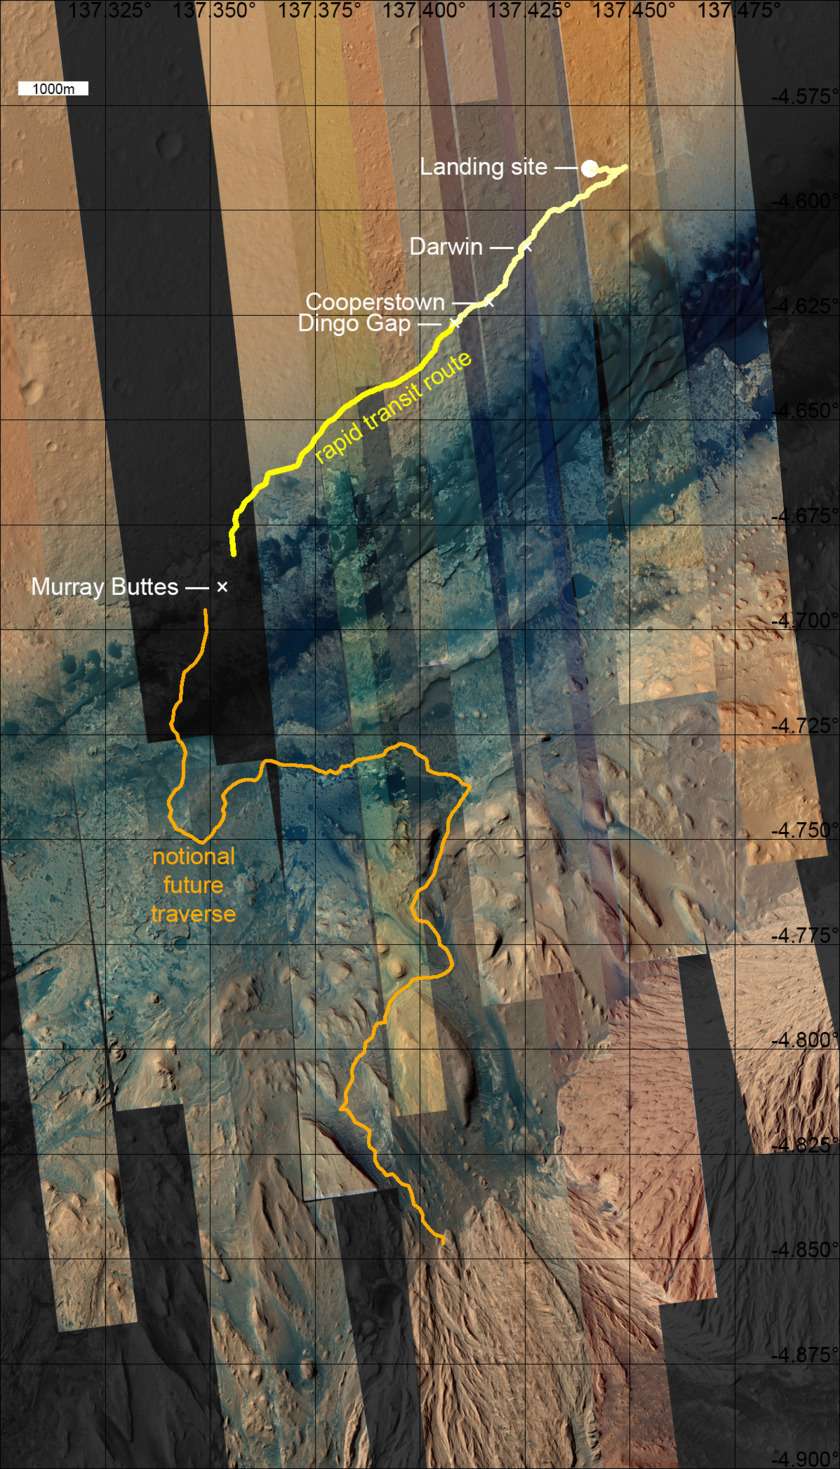 Le périple de Curiosity tracé sur les images acquises avec la caméra HiRise de la sonde spatiale <em>Mars Reconnaissance Orbiter</em> (MRO). Le rover, qui a parcouru 4,97 kilomètres depuis son arrivée le 6 août 2012, a franchi avec succès le passage de Dingo Gap. La base du mont Sharp est à environ cinq kilomètres. © Nasa, JPL, MSSS, <em>University of Arizona</em>, Emily Lakdawalla